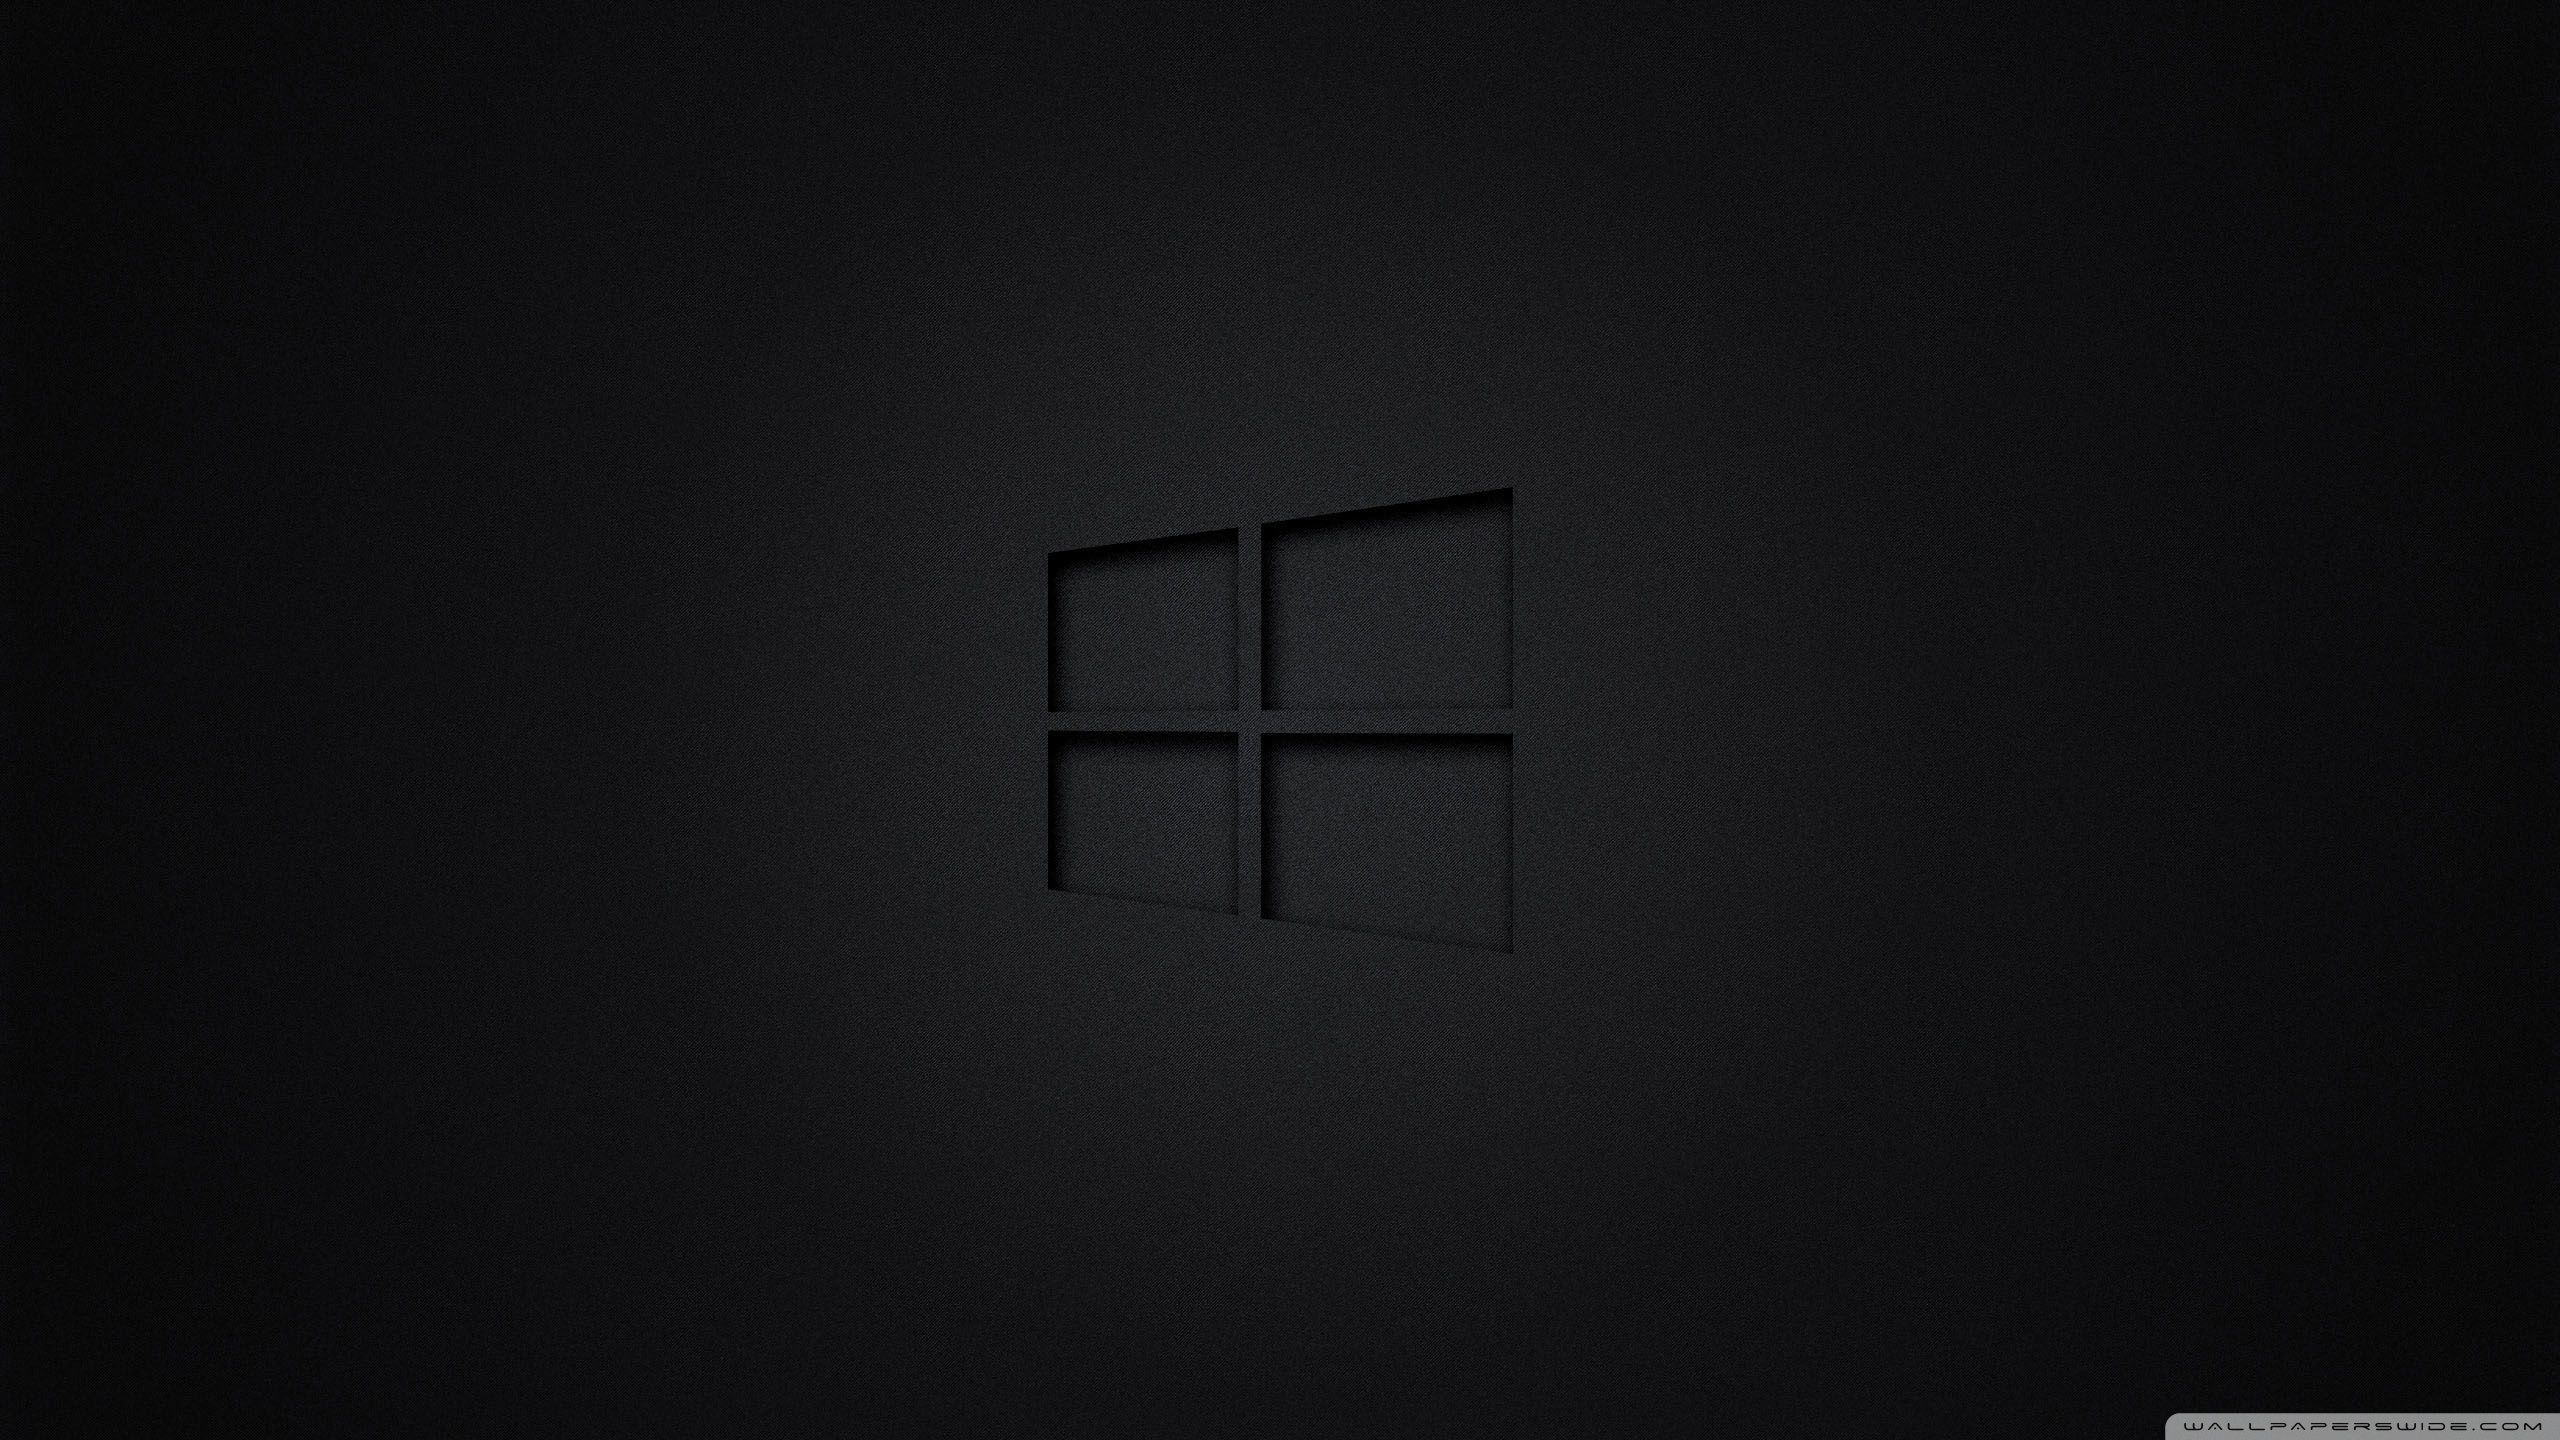 Fix Desktop Black Screen Windows 10: Nếu bạn đang gặp phải vấn đề về màn hình đen khi sử dụng Windows 10, đừng lo lắng! Chúng tôi sẽ giúp bạn khắc phục tình trạng này và tận hưởng trải nghiệm tuyệt vời của hệ điều hành Windows